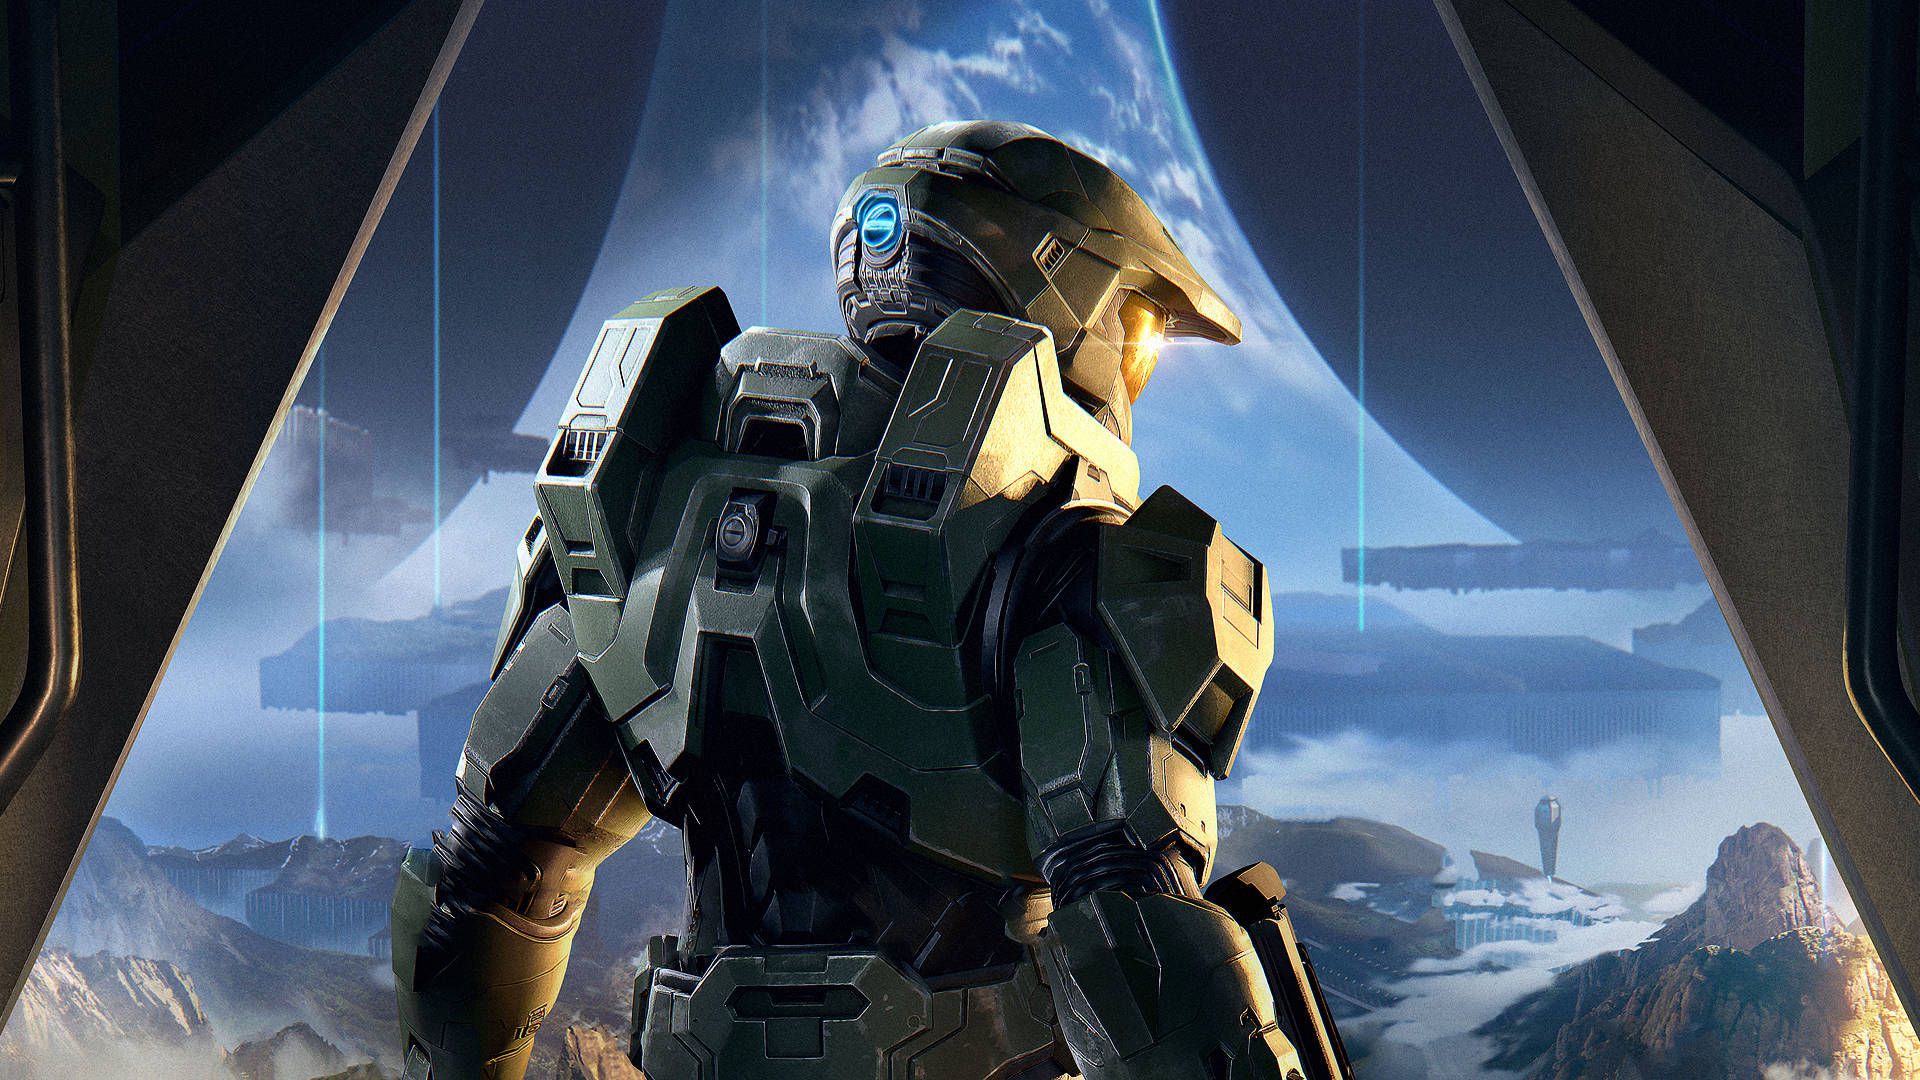 Segunda temporada da série Halo ganha teaser e data de lançamento